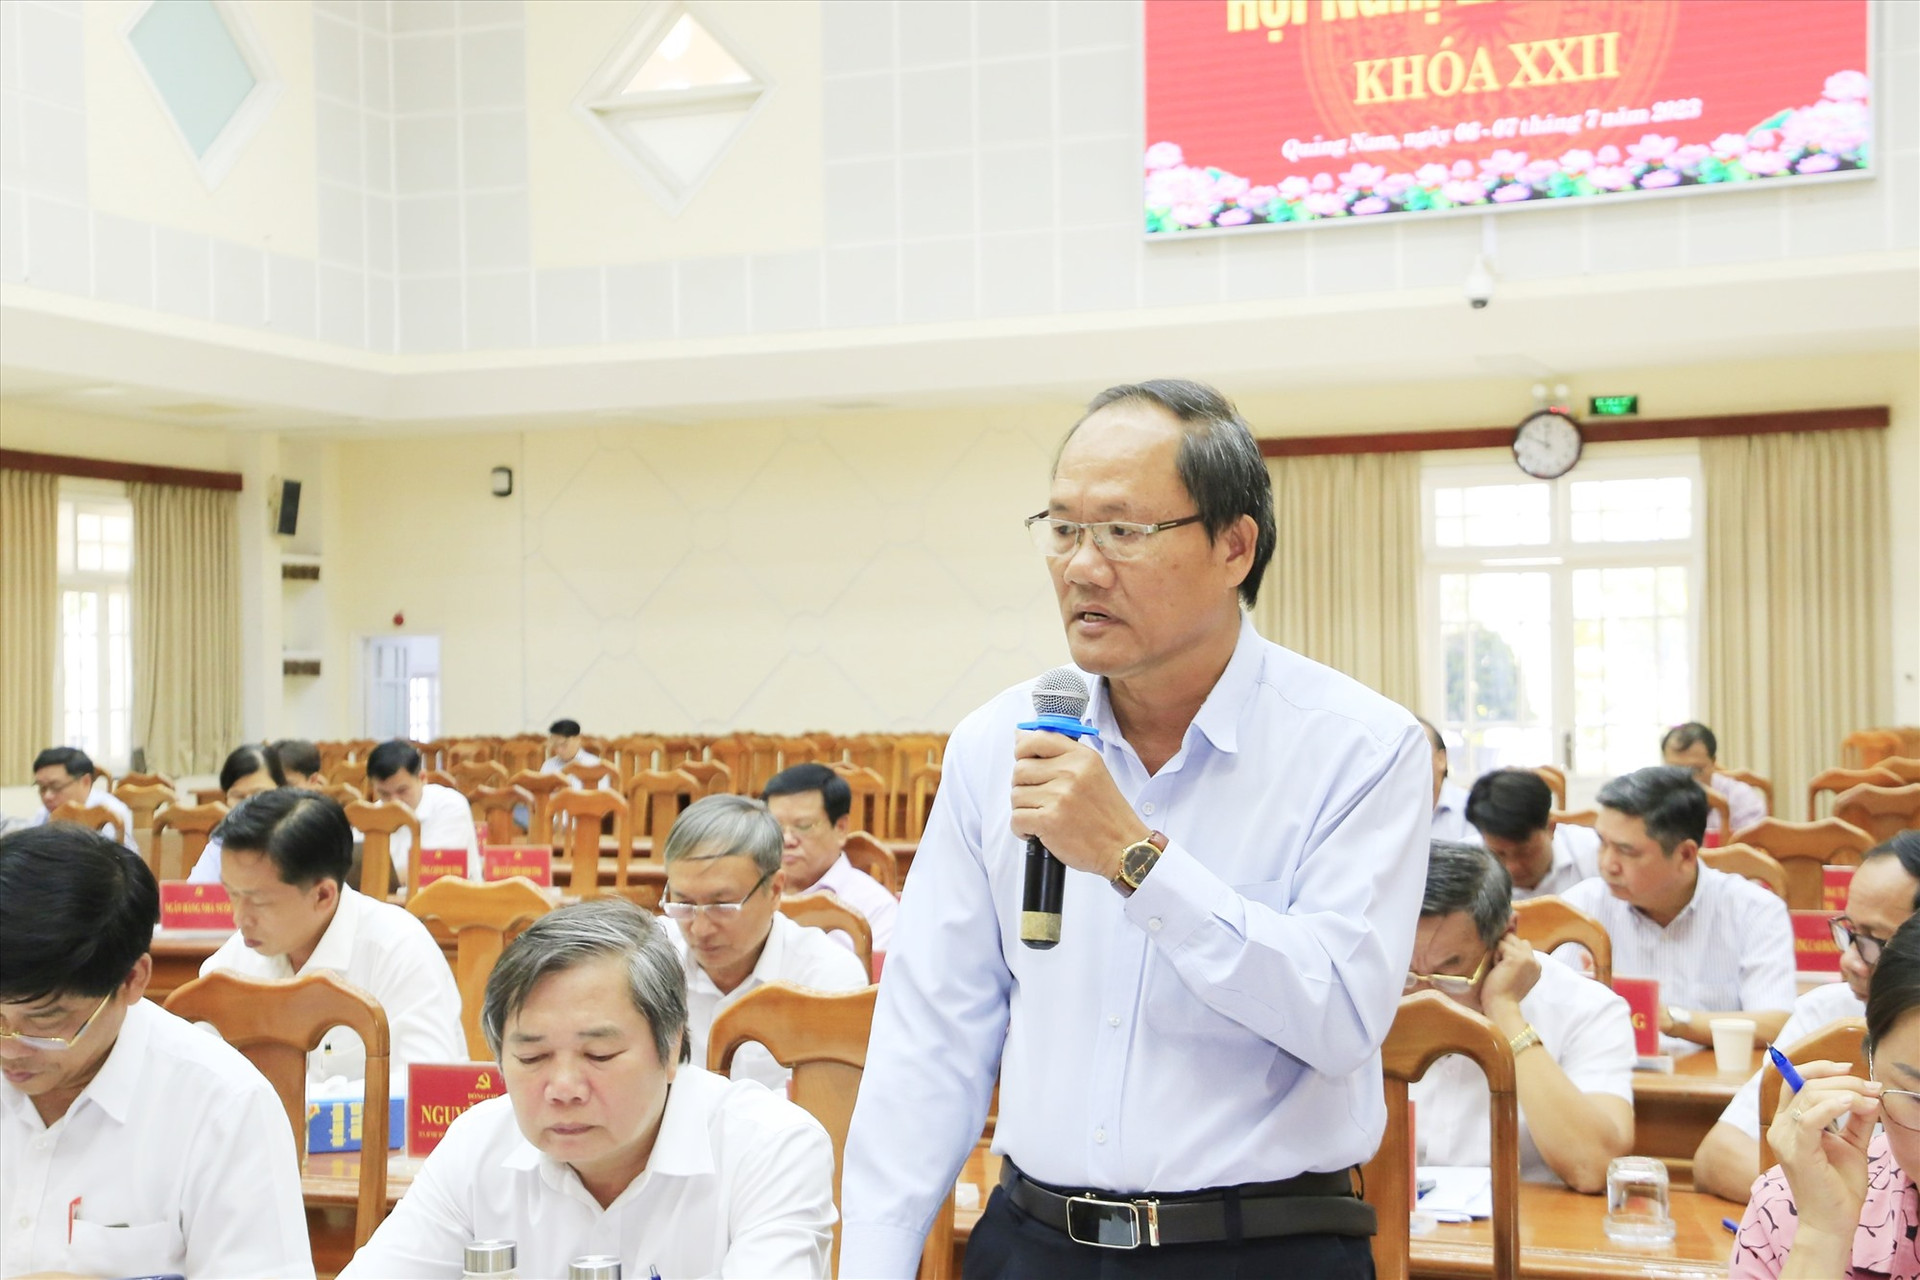 Ông Phạm Viết Tích - Giám đốc Sở NN&PTNT giải trình làm rõ thêm các đối với các chỉ tiêu dự kiến khó đạt đến năm 2025 liên quan đến xây dựng nông thôn mới, phát triển rừng. Ảnh: P.V